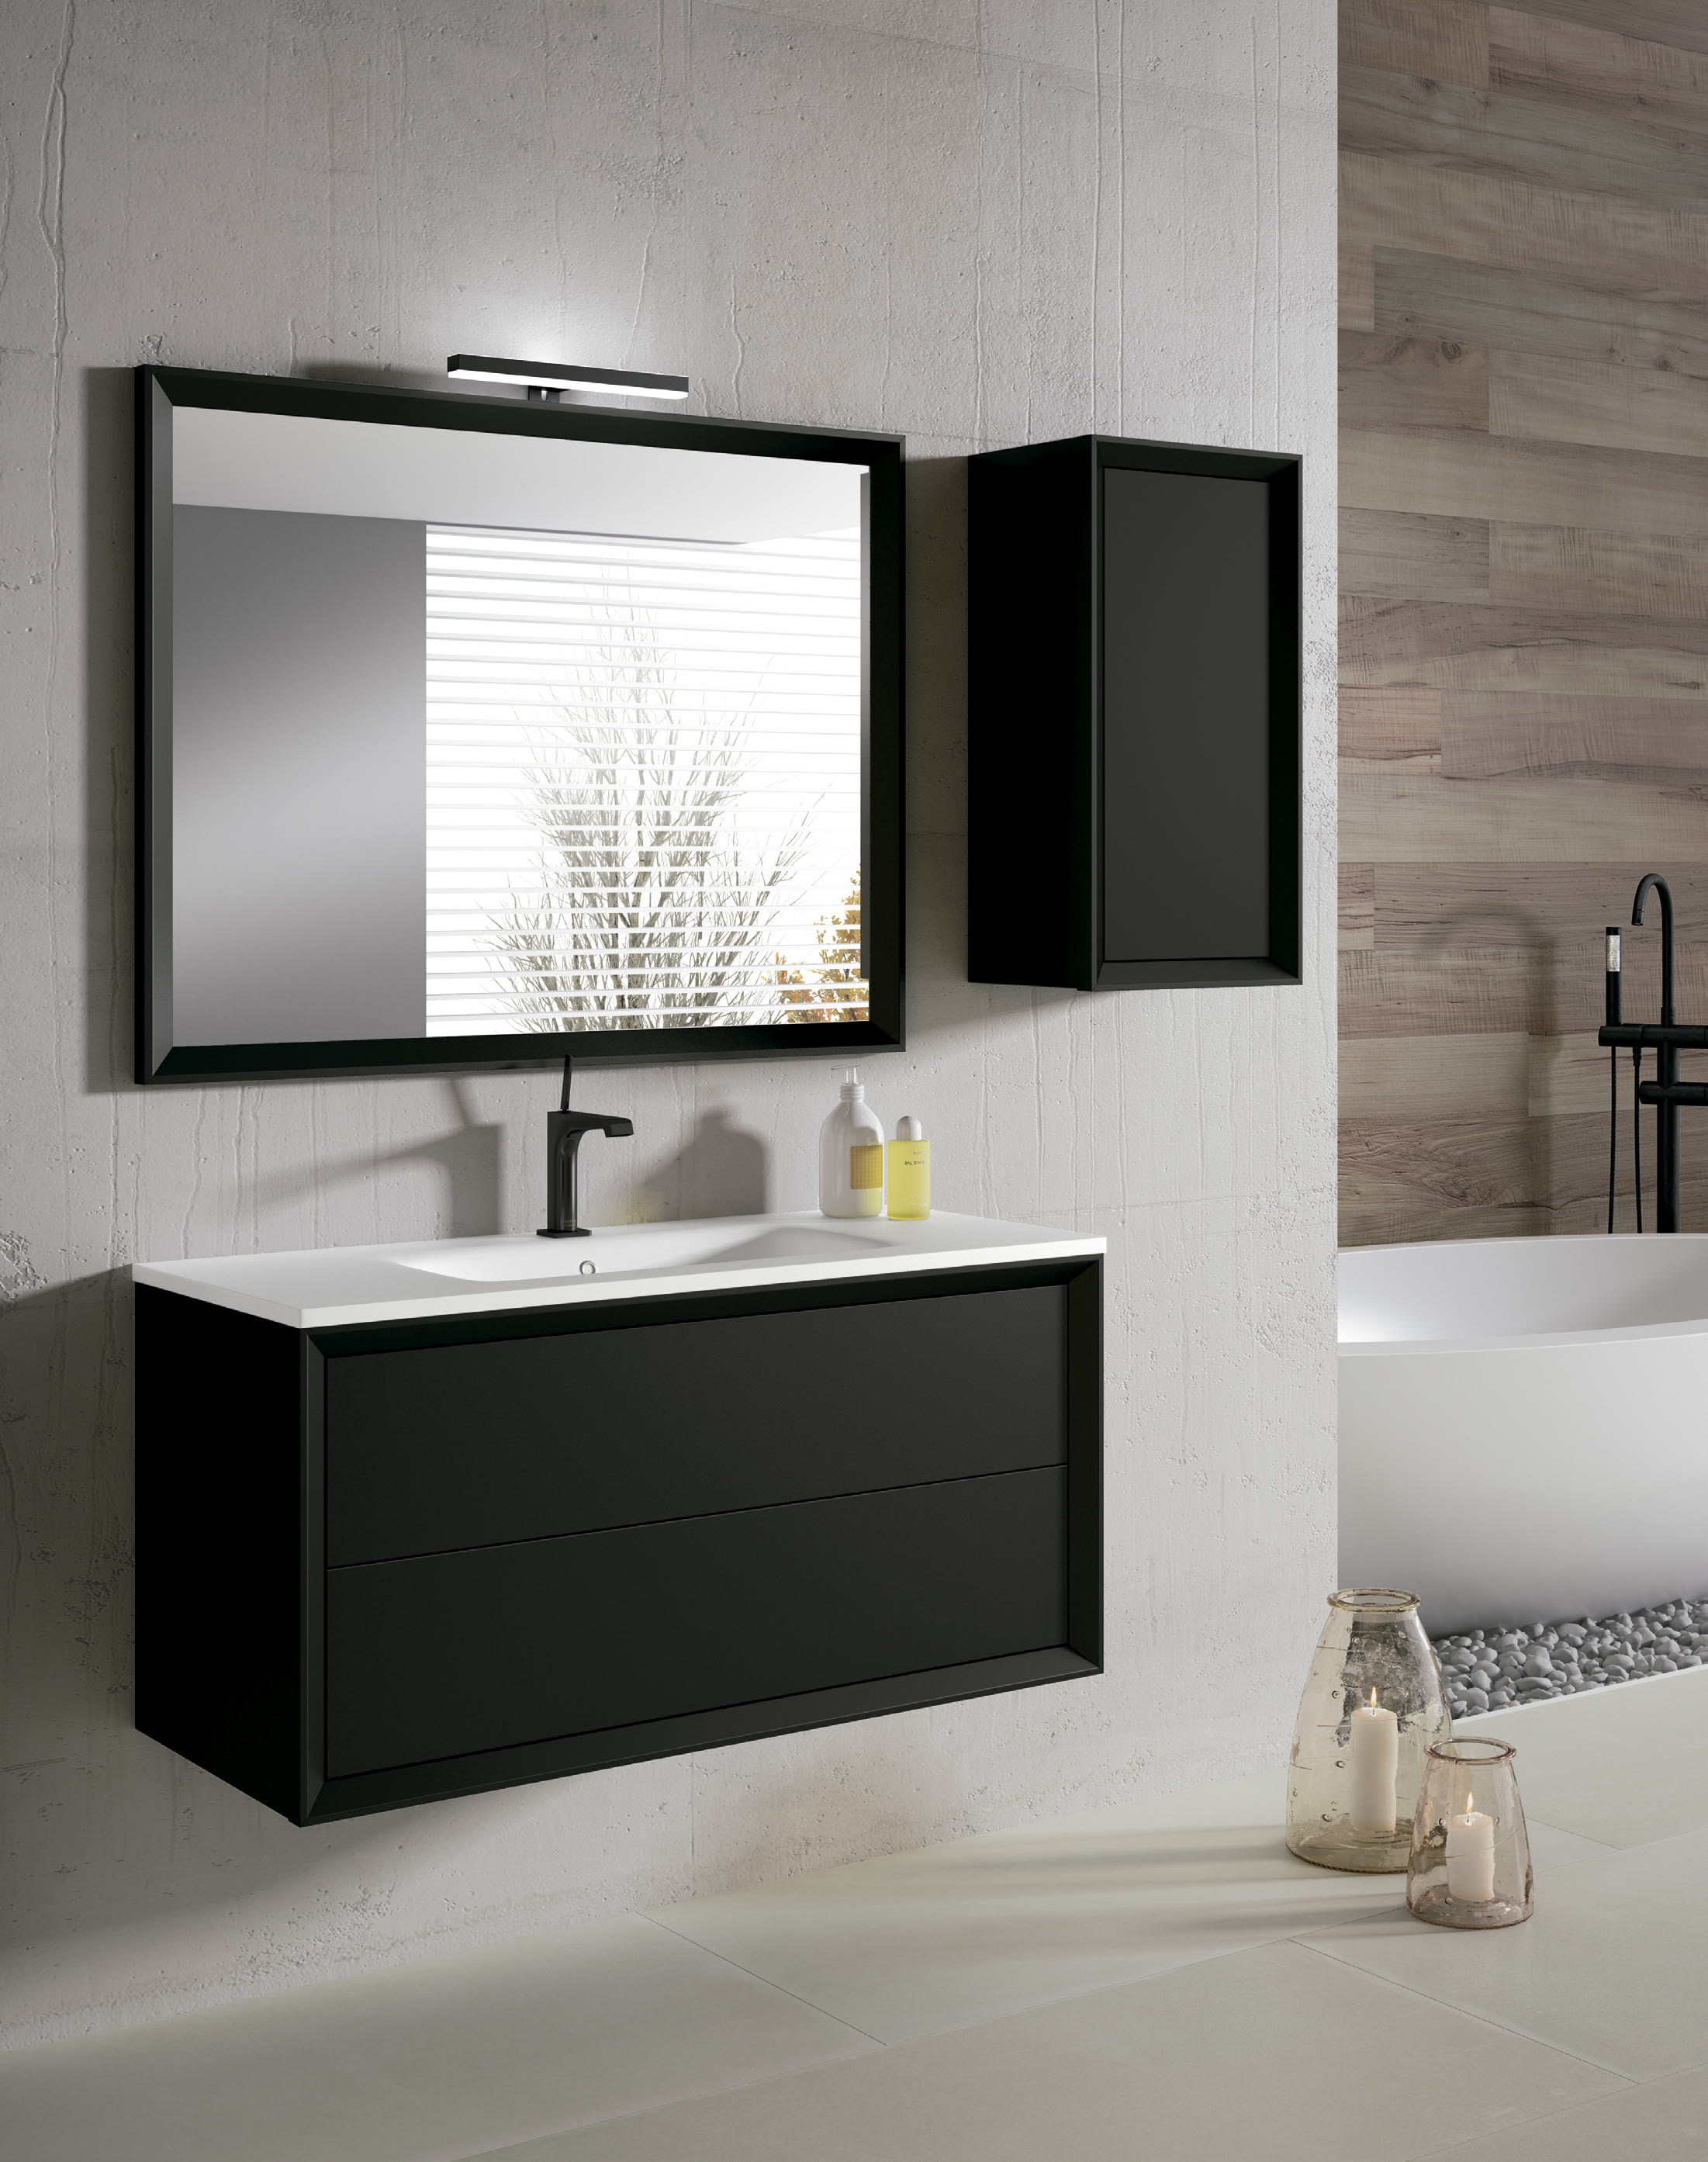 Mueble de baño diseño moderno - espejo incluido BOSS de Socimobel